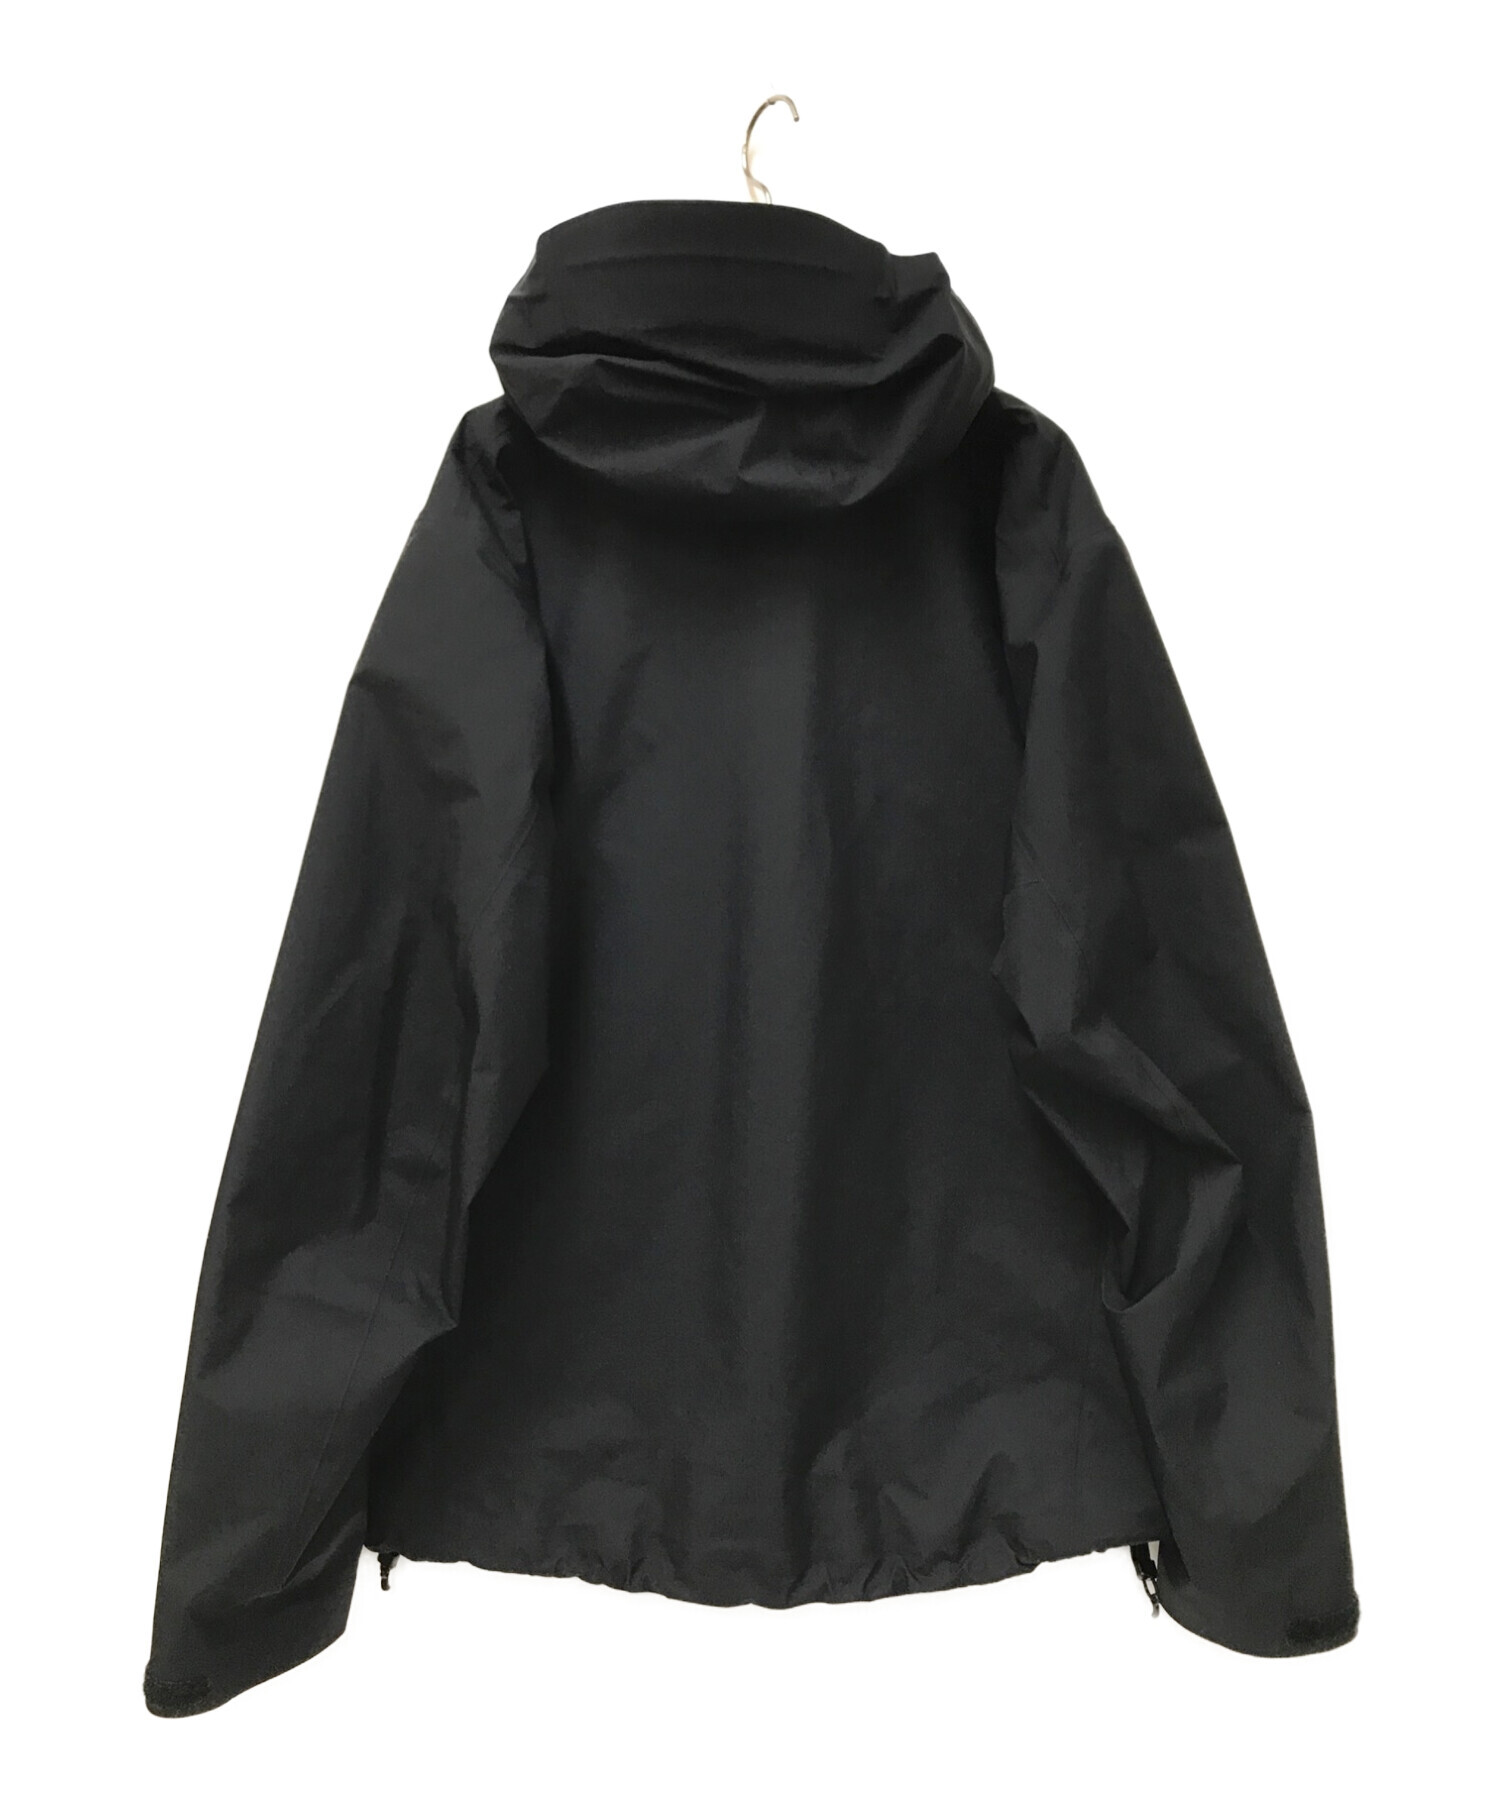 ジャケット/アウターARC’TERYX アークテリクス beta jacket ブラック サイズL